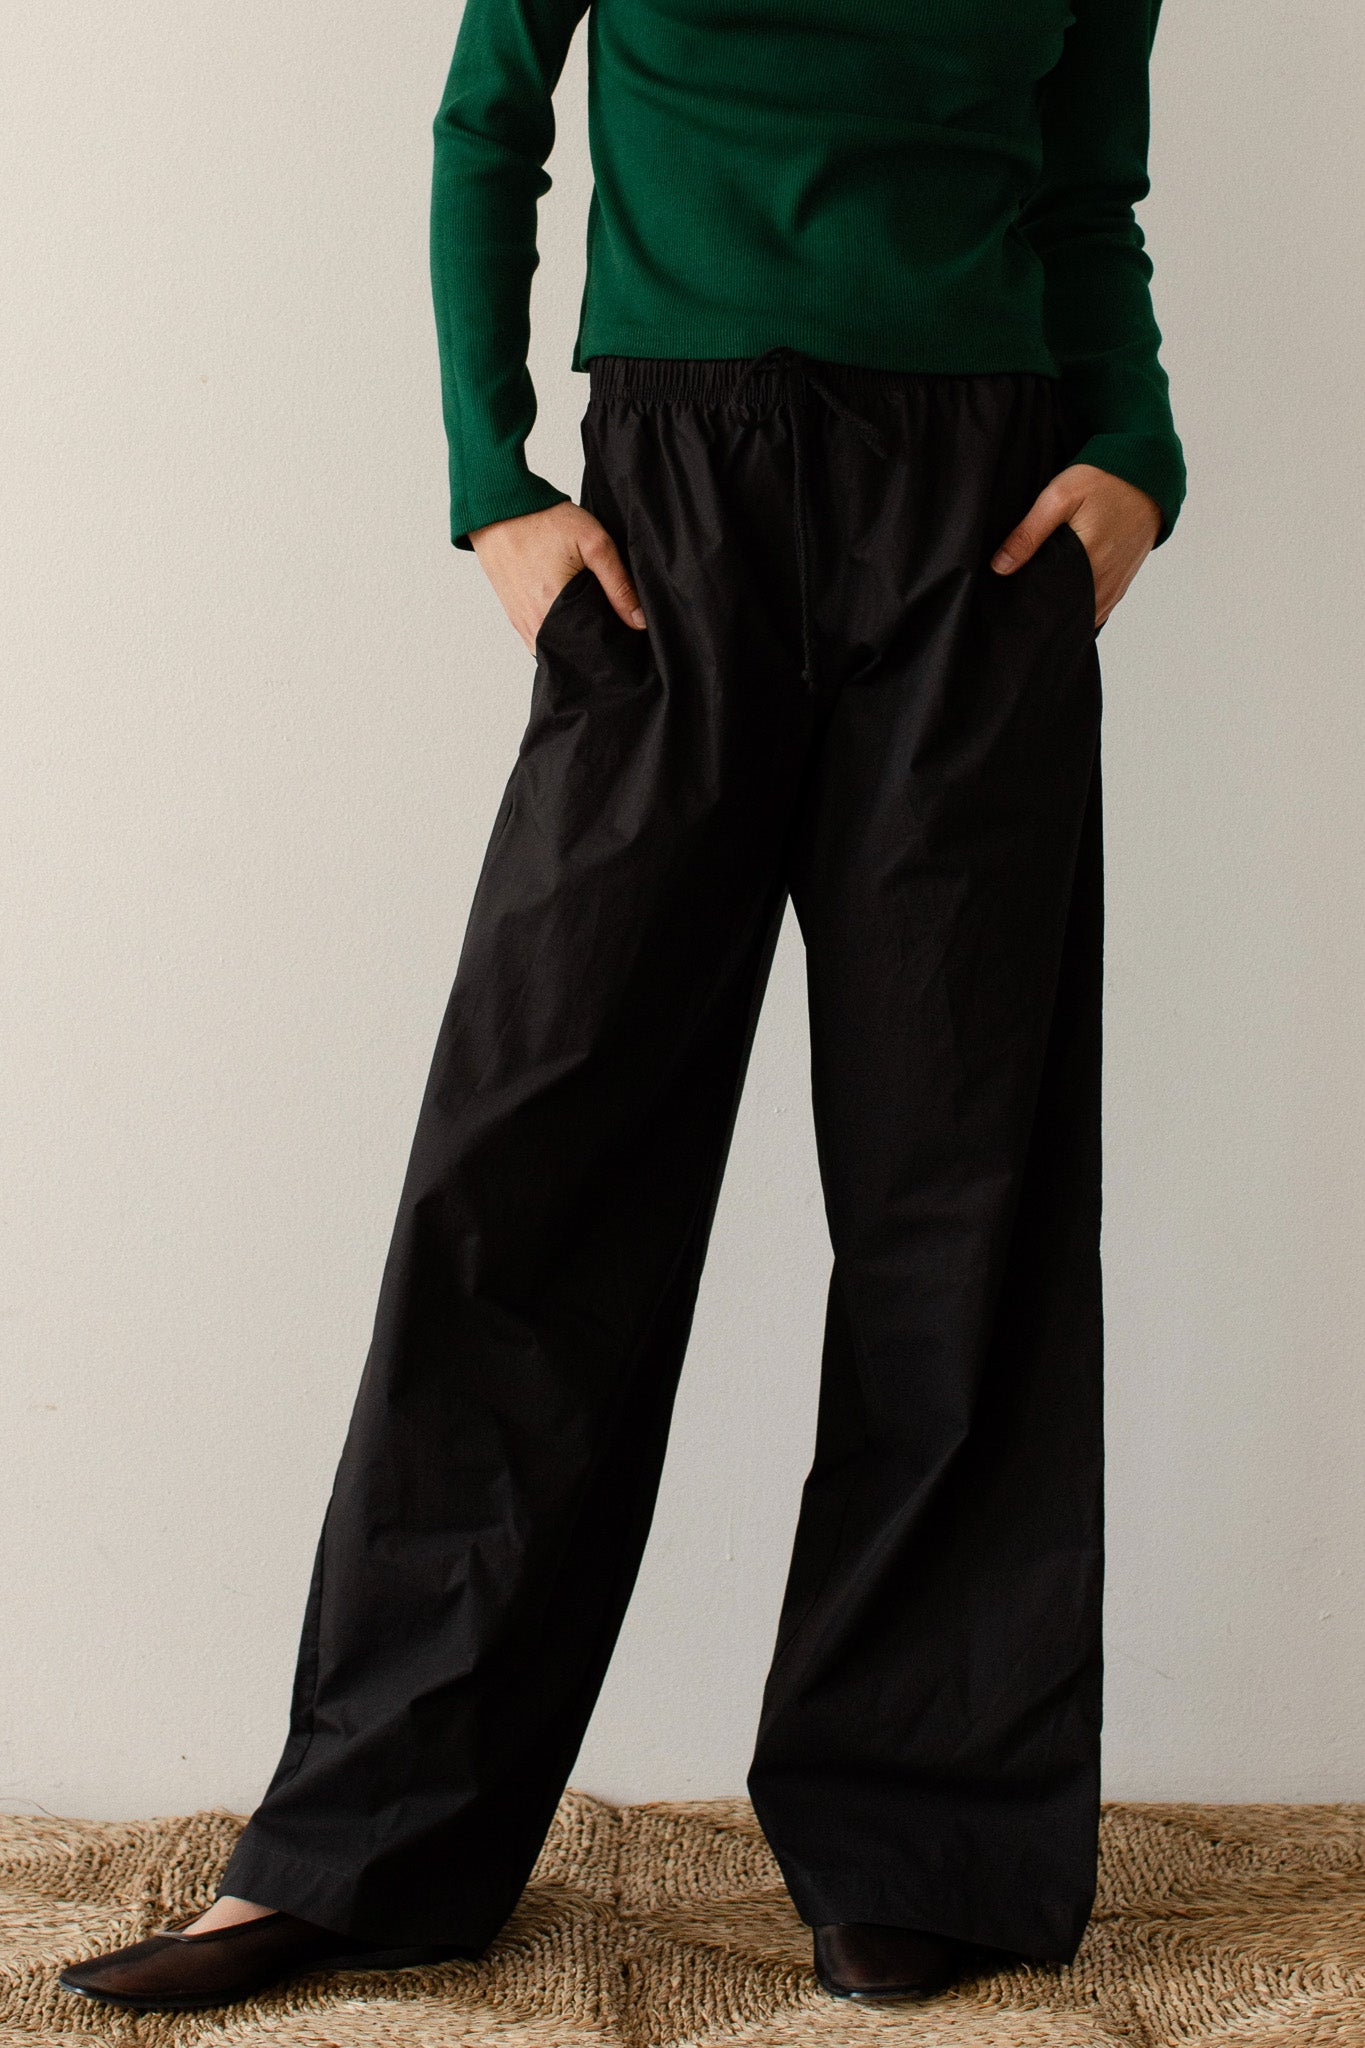 Buy Black Trousers & Pants for Women by Popnetic Online